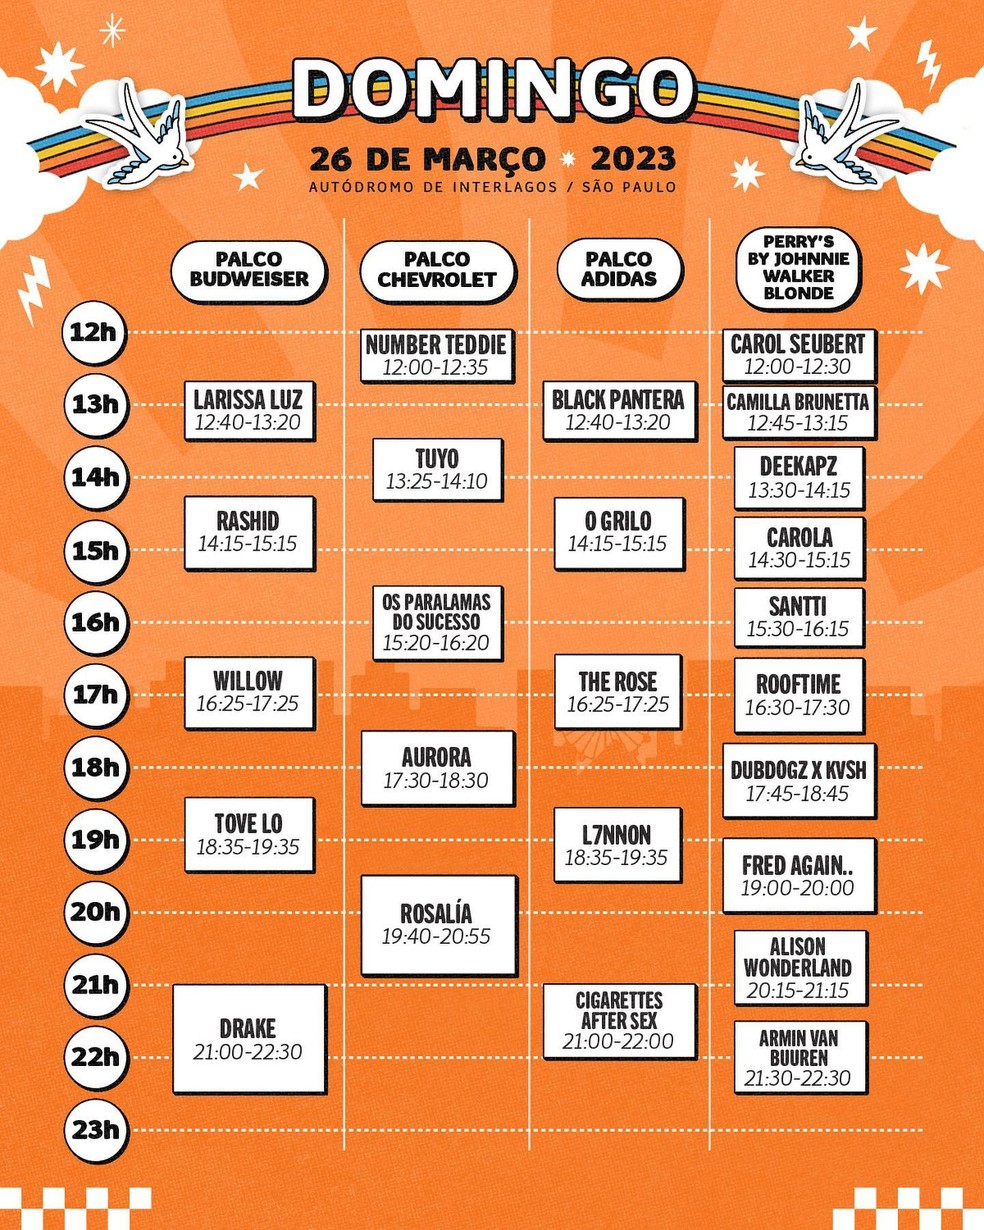 Lollapalooza Brasil 2023 divulga horários dos shows, Lollapalooza